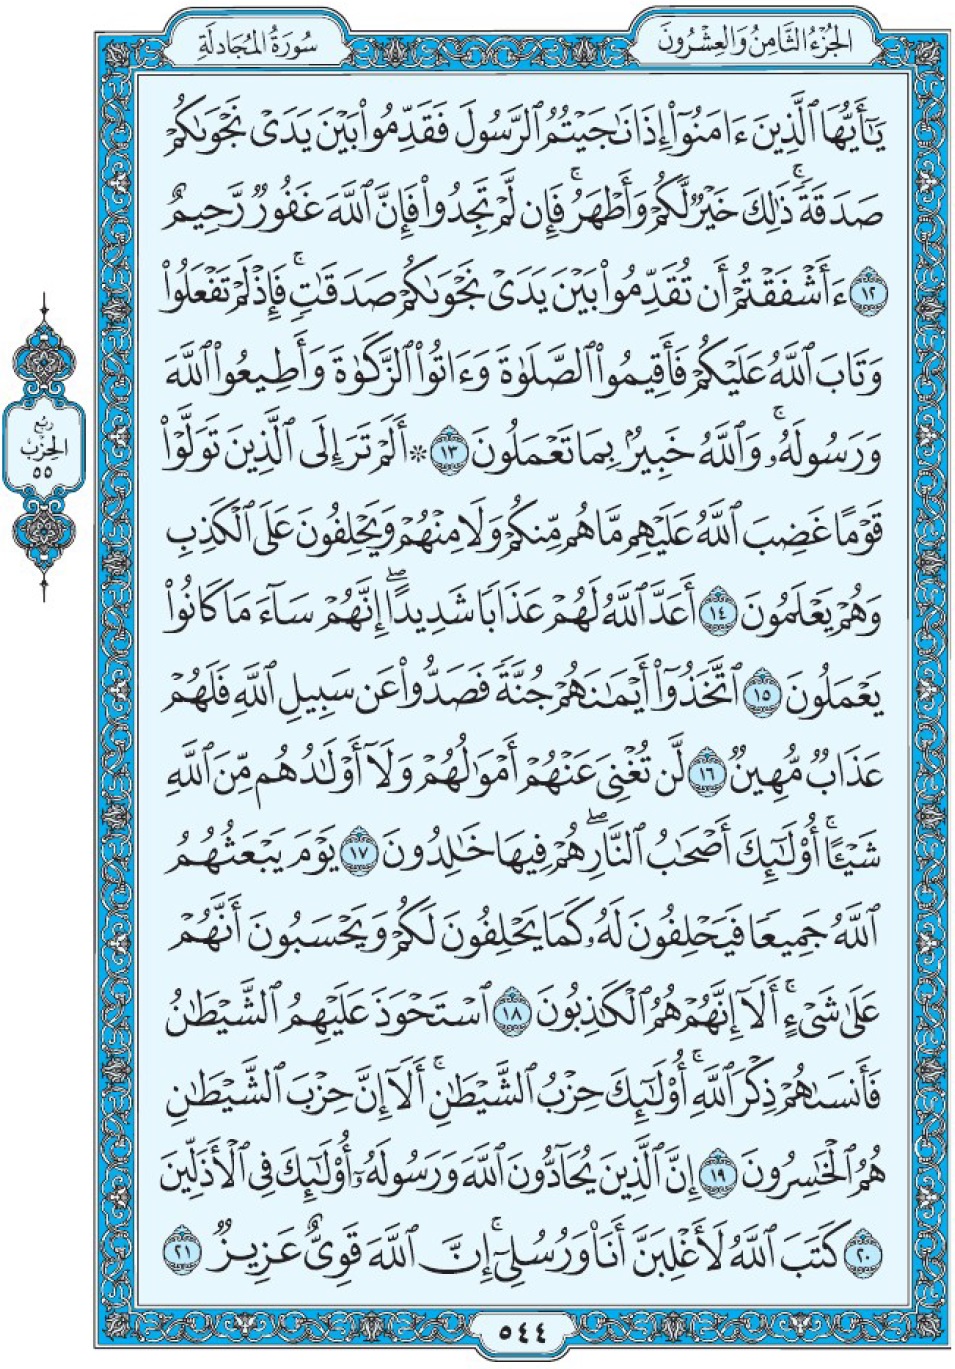 Коран Мединский мусхаф страница 544, сура аль-Муджядиля, аят 12-21